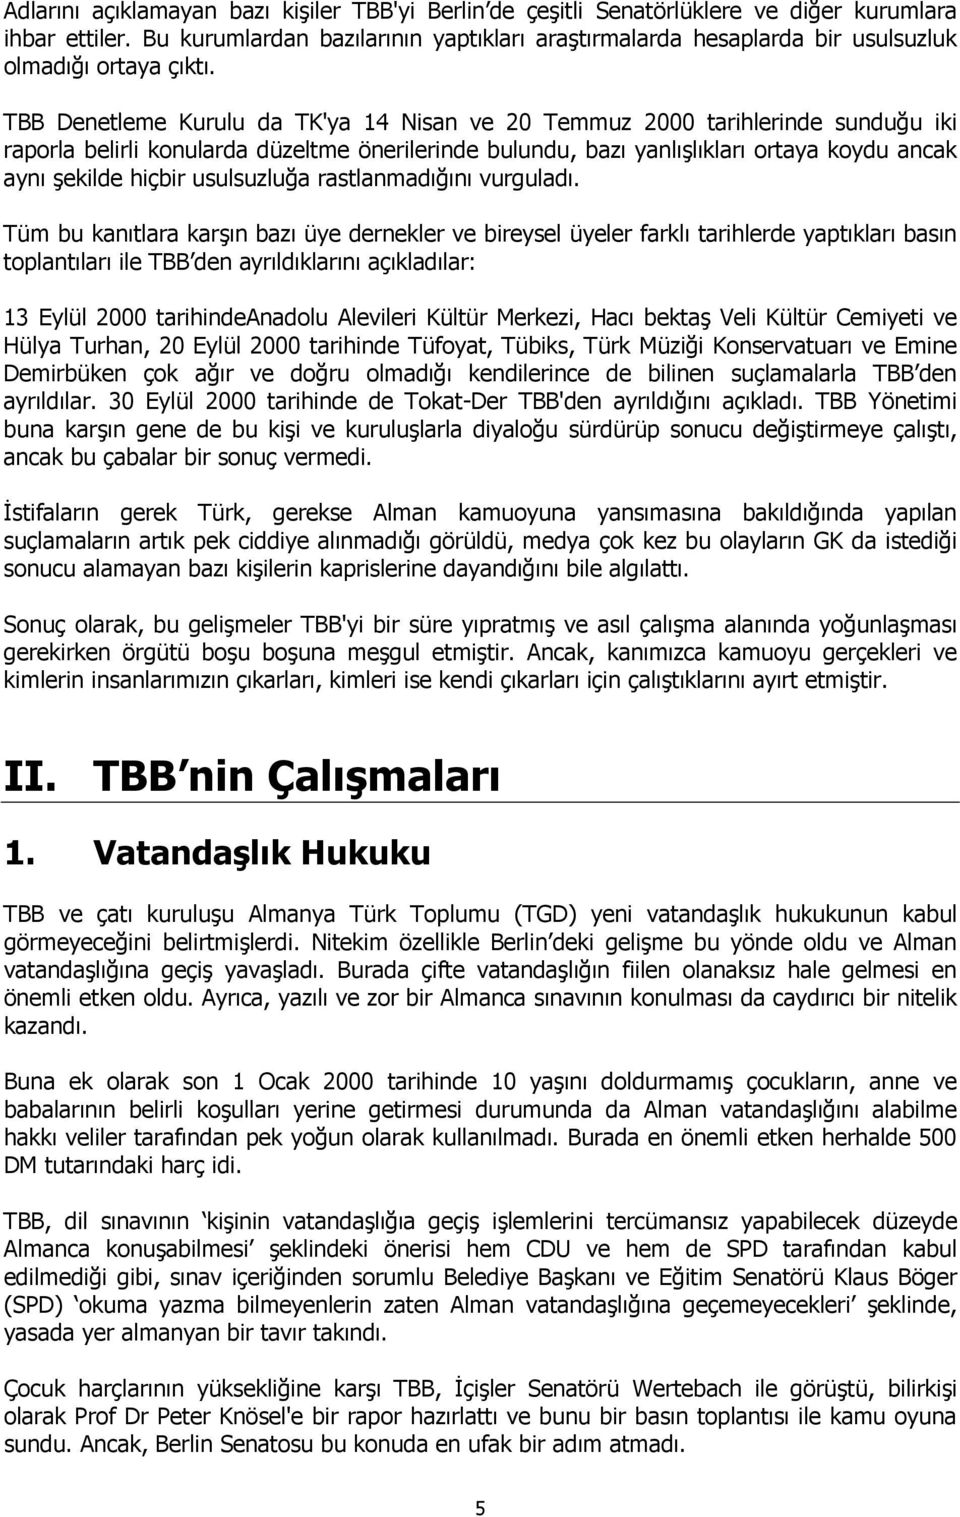 TBB Denetleme Kurulu da TK'ya 14 Nisan ve 20 Temmuz 2000 tarihlerinde sunduğu iki raporla belirli konularda düzeltme önerilerinde bulundu, bazı yanlışlıkları ortaya koydu ancak aynı şekilde hiçbir